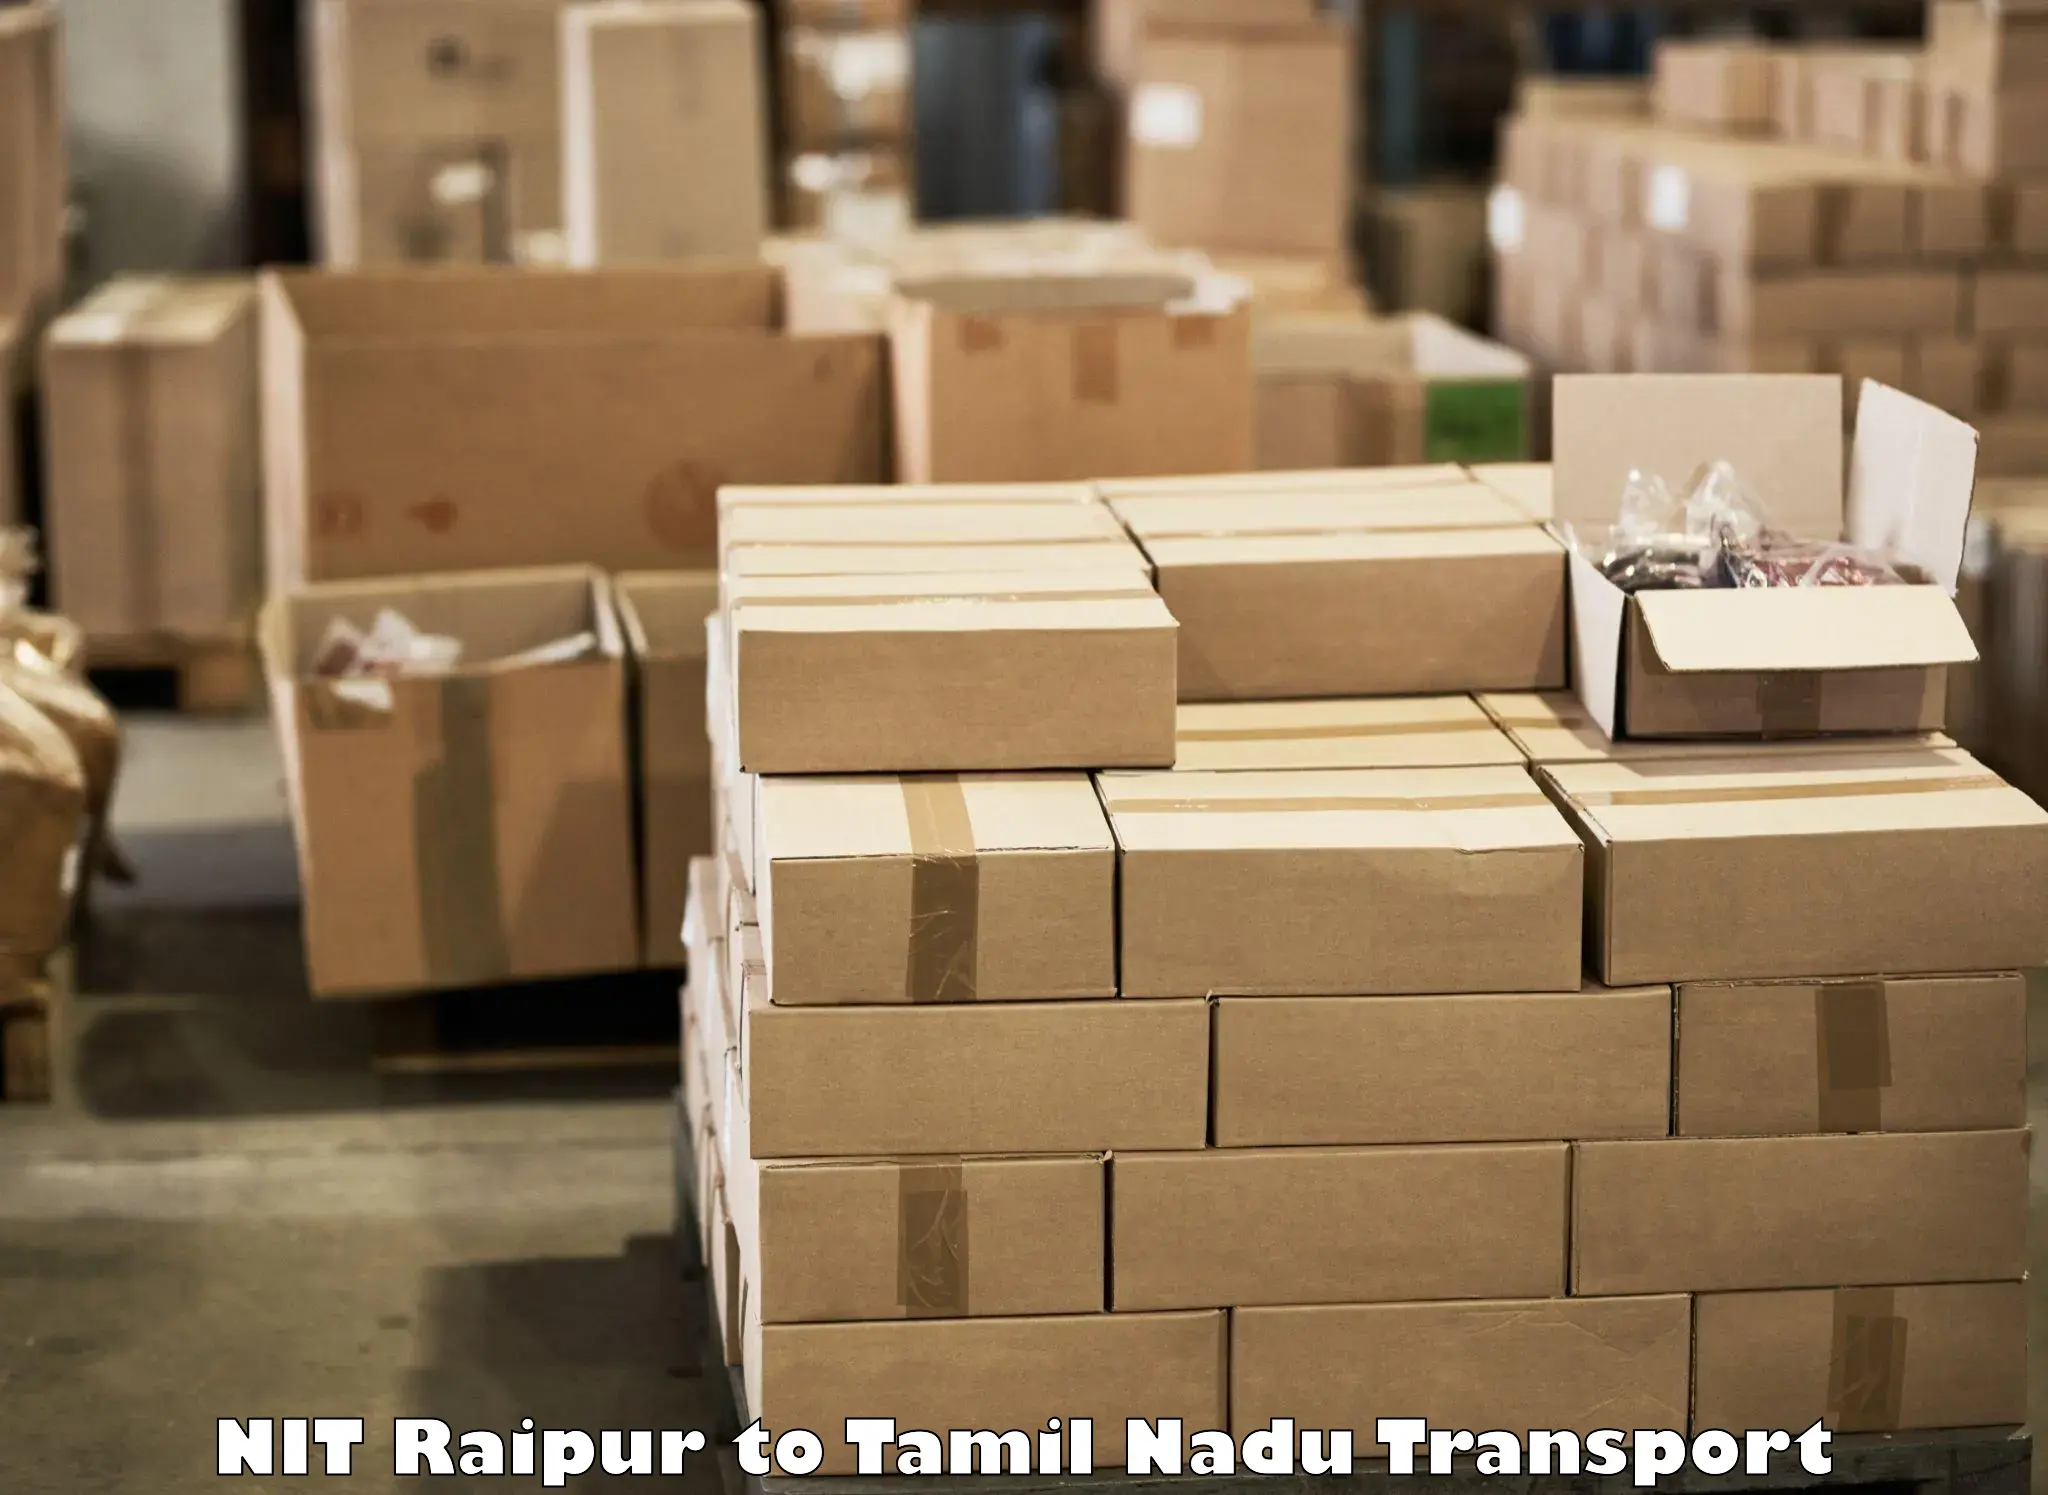 Pick up transport service NIT Raipur to Gobichettipalayam